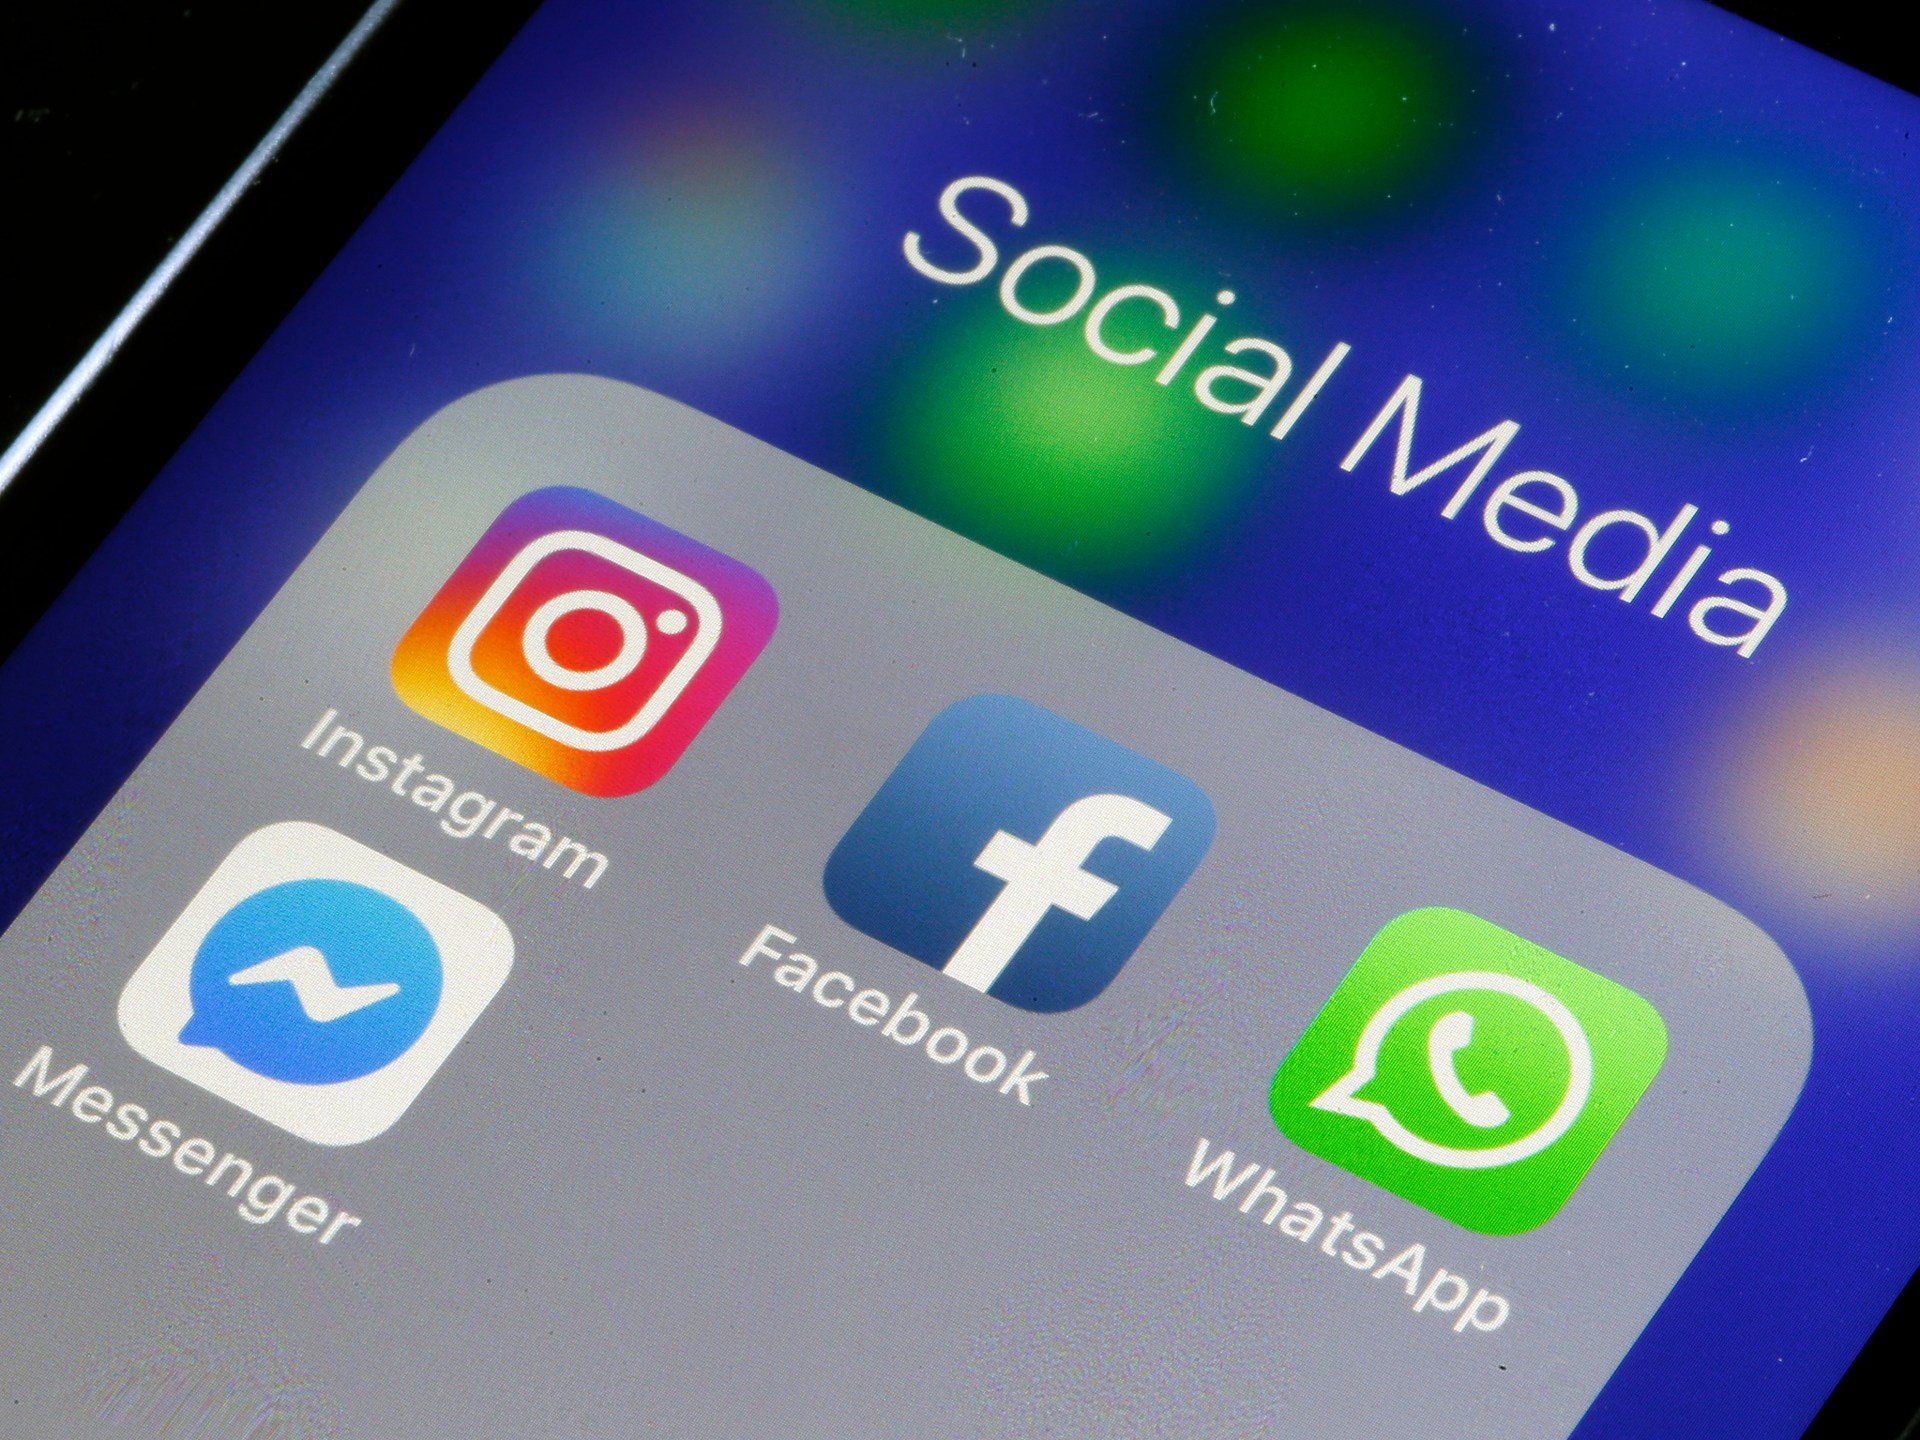 فلوريدا تقر قانونا يقيد استخدام القصَّر وسائل التواصل الاجتماعي | تكنولوجيا – البوكس نيوز